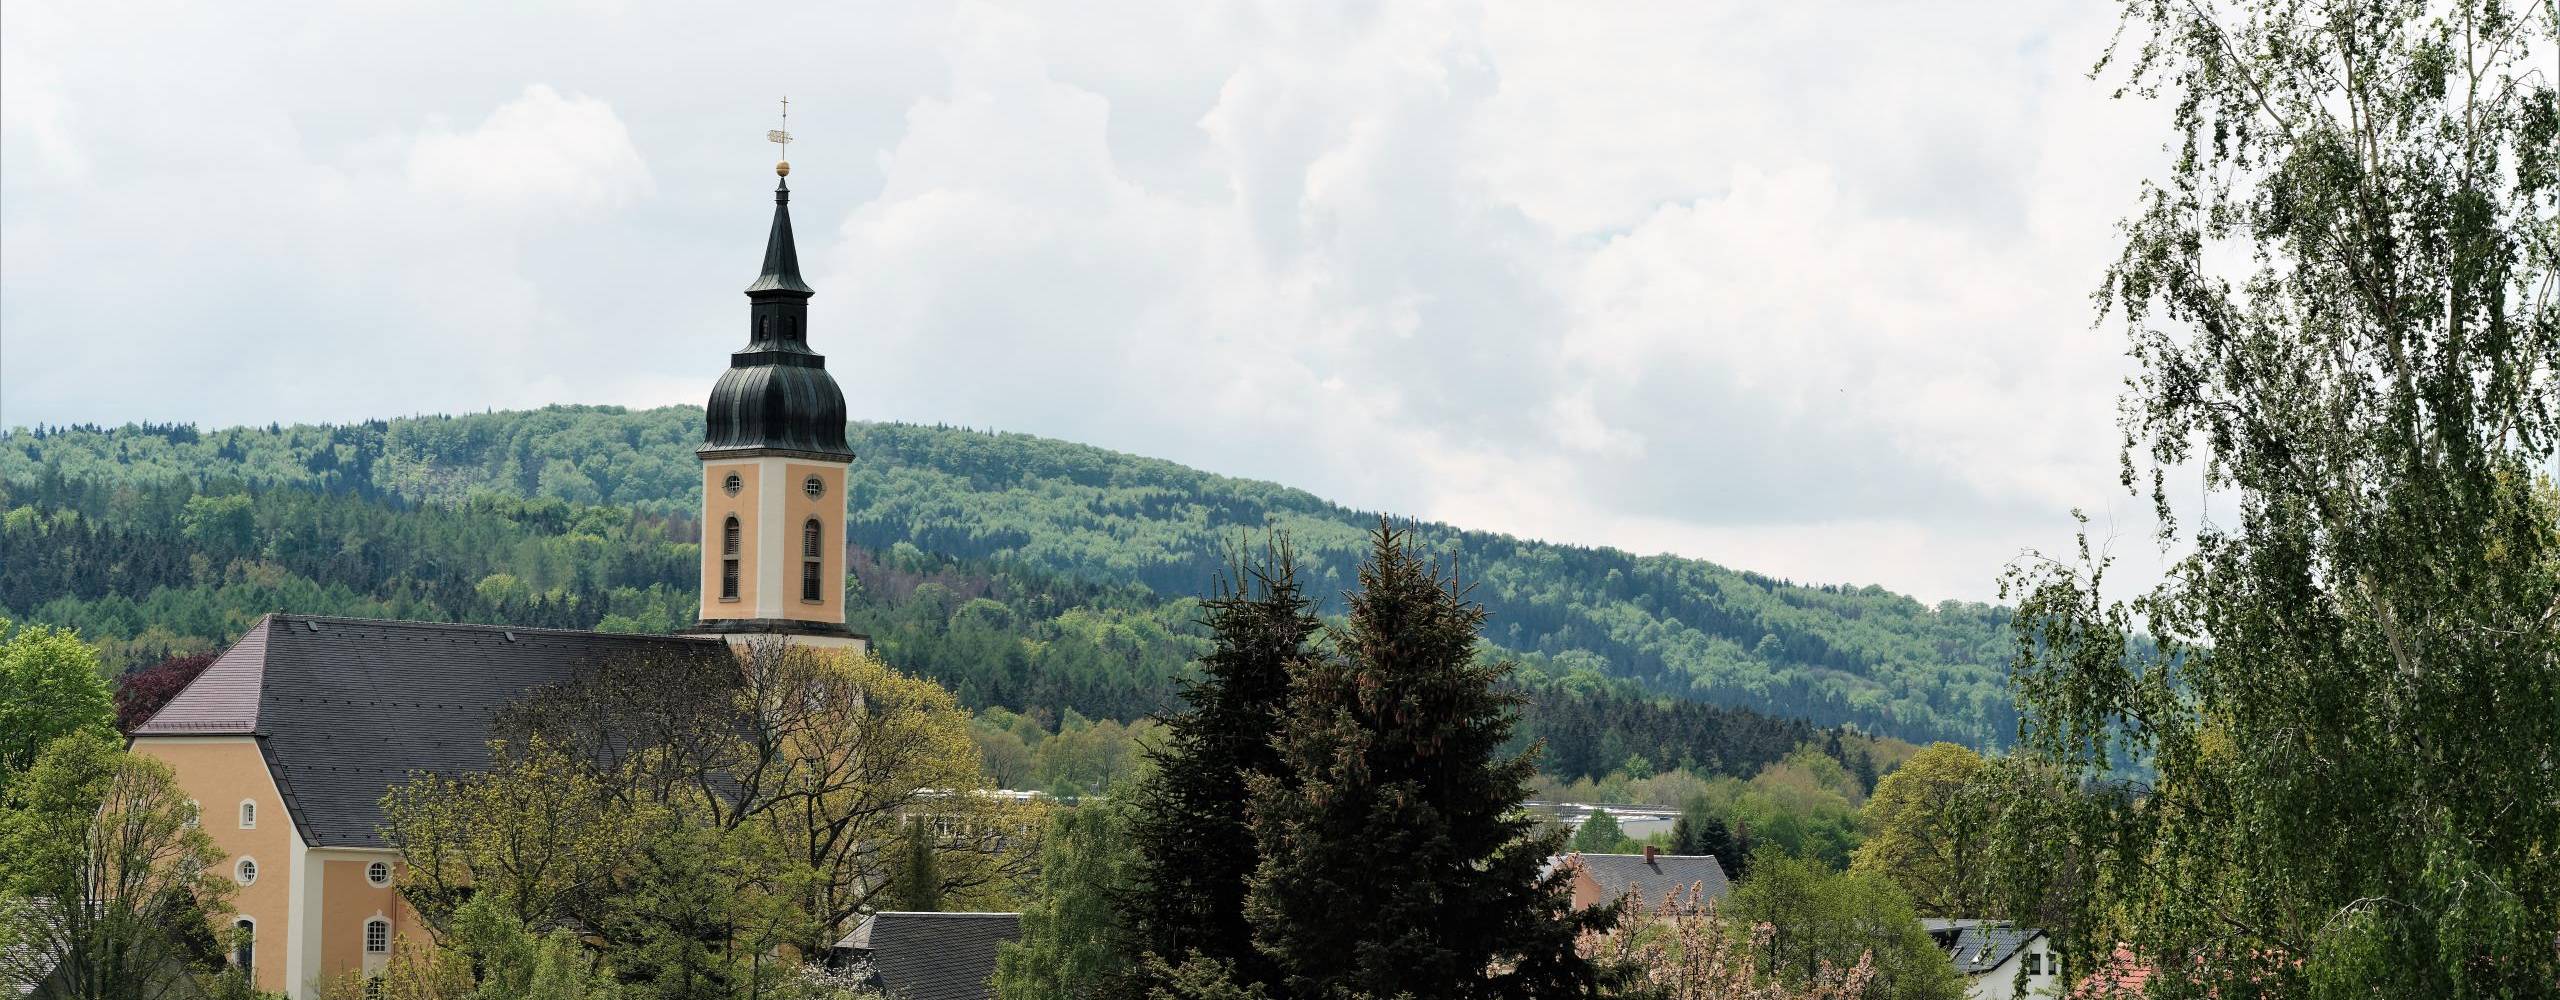 blick aus neukirch zum valtenberg c. hilse ©Blick auf Kirche und zum Valtenberg Foto: Christian Hilse